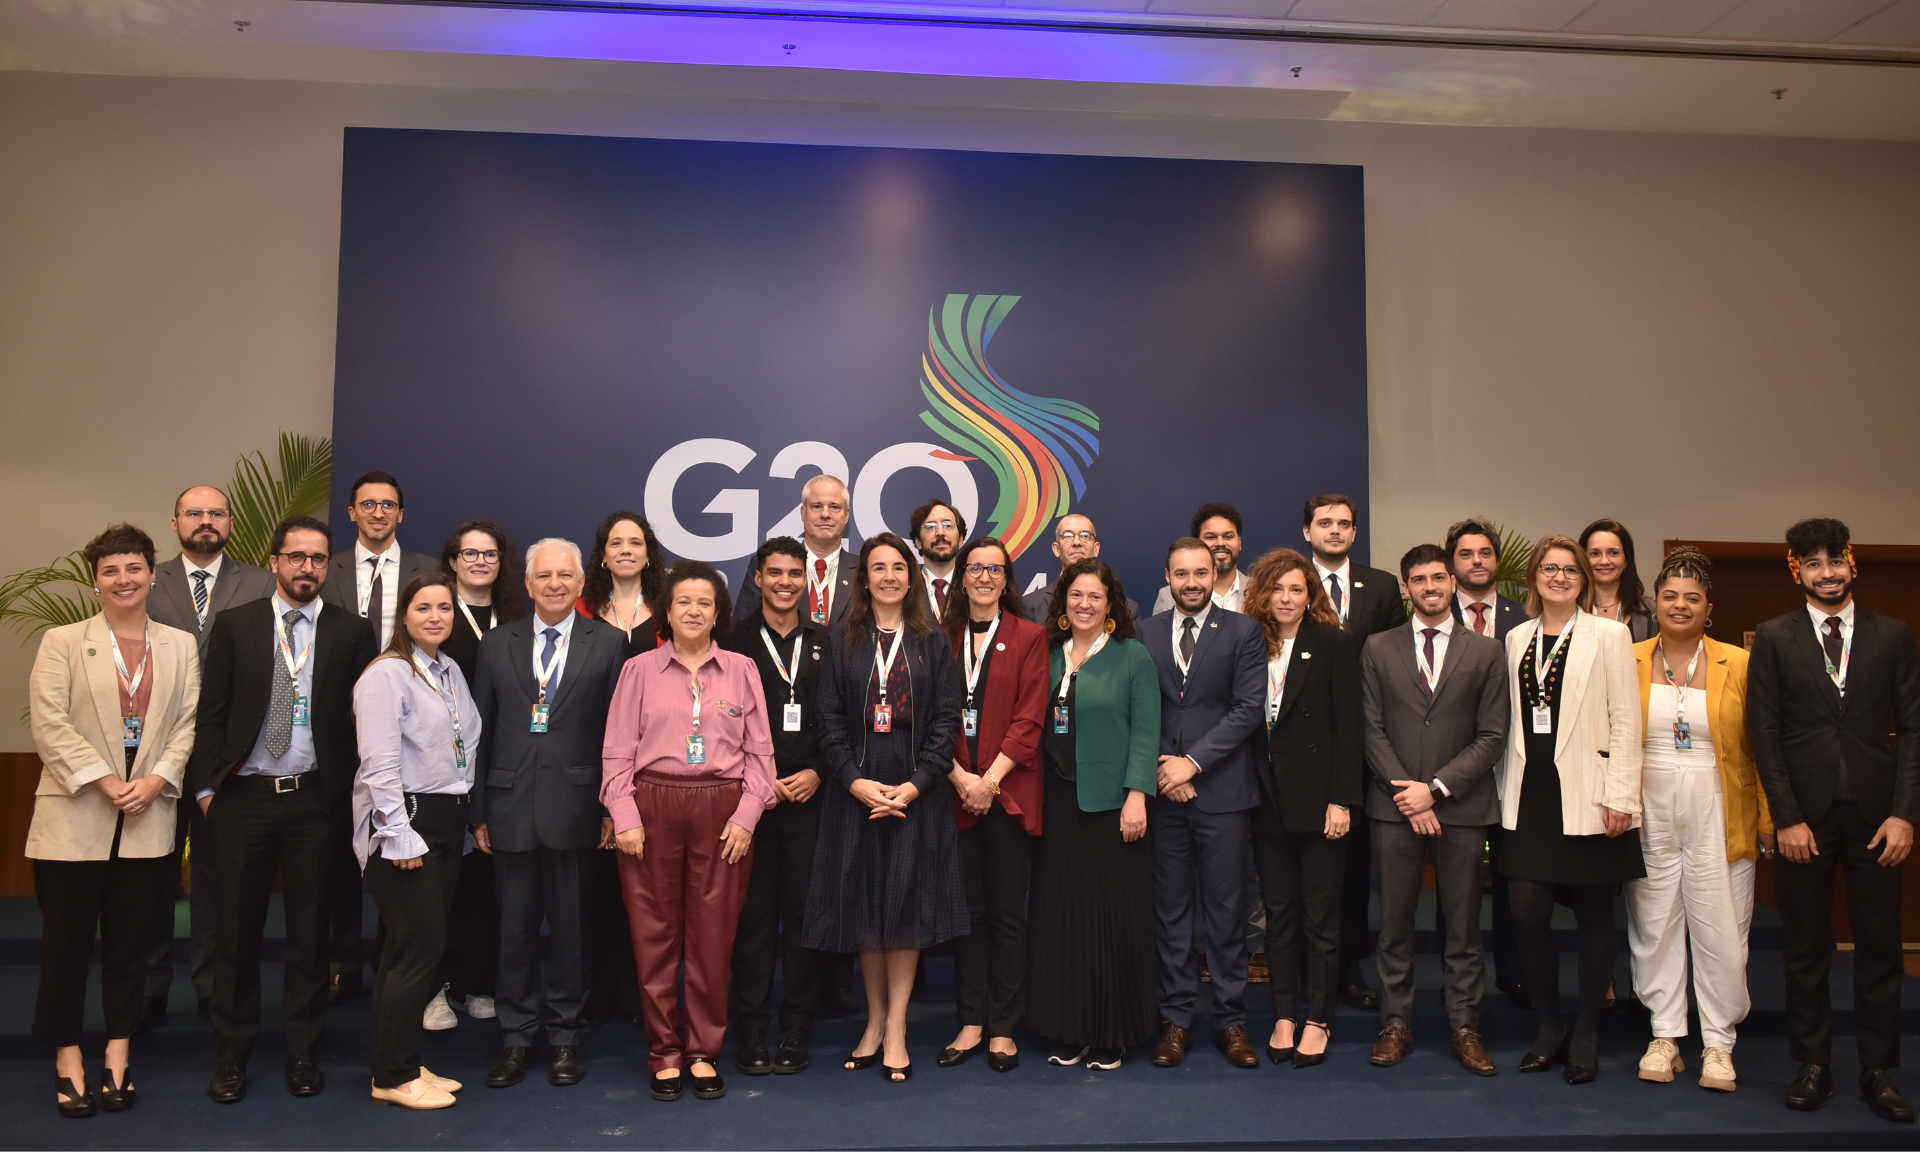 G20 Social na Trilha de Finanças: financiamento sustentável e padrões para taxação internacional estão entre as demandas apresentadas